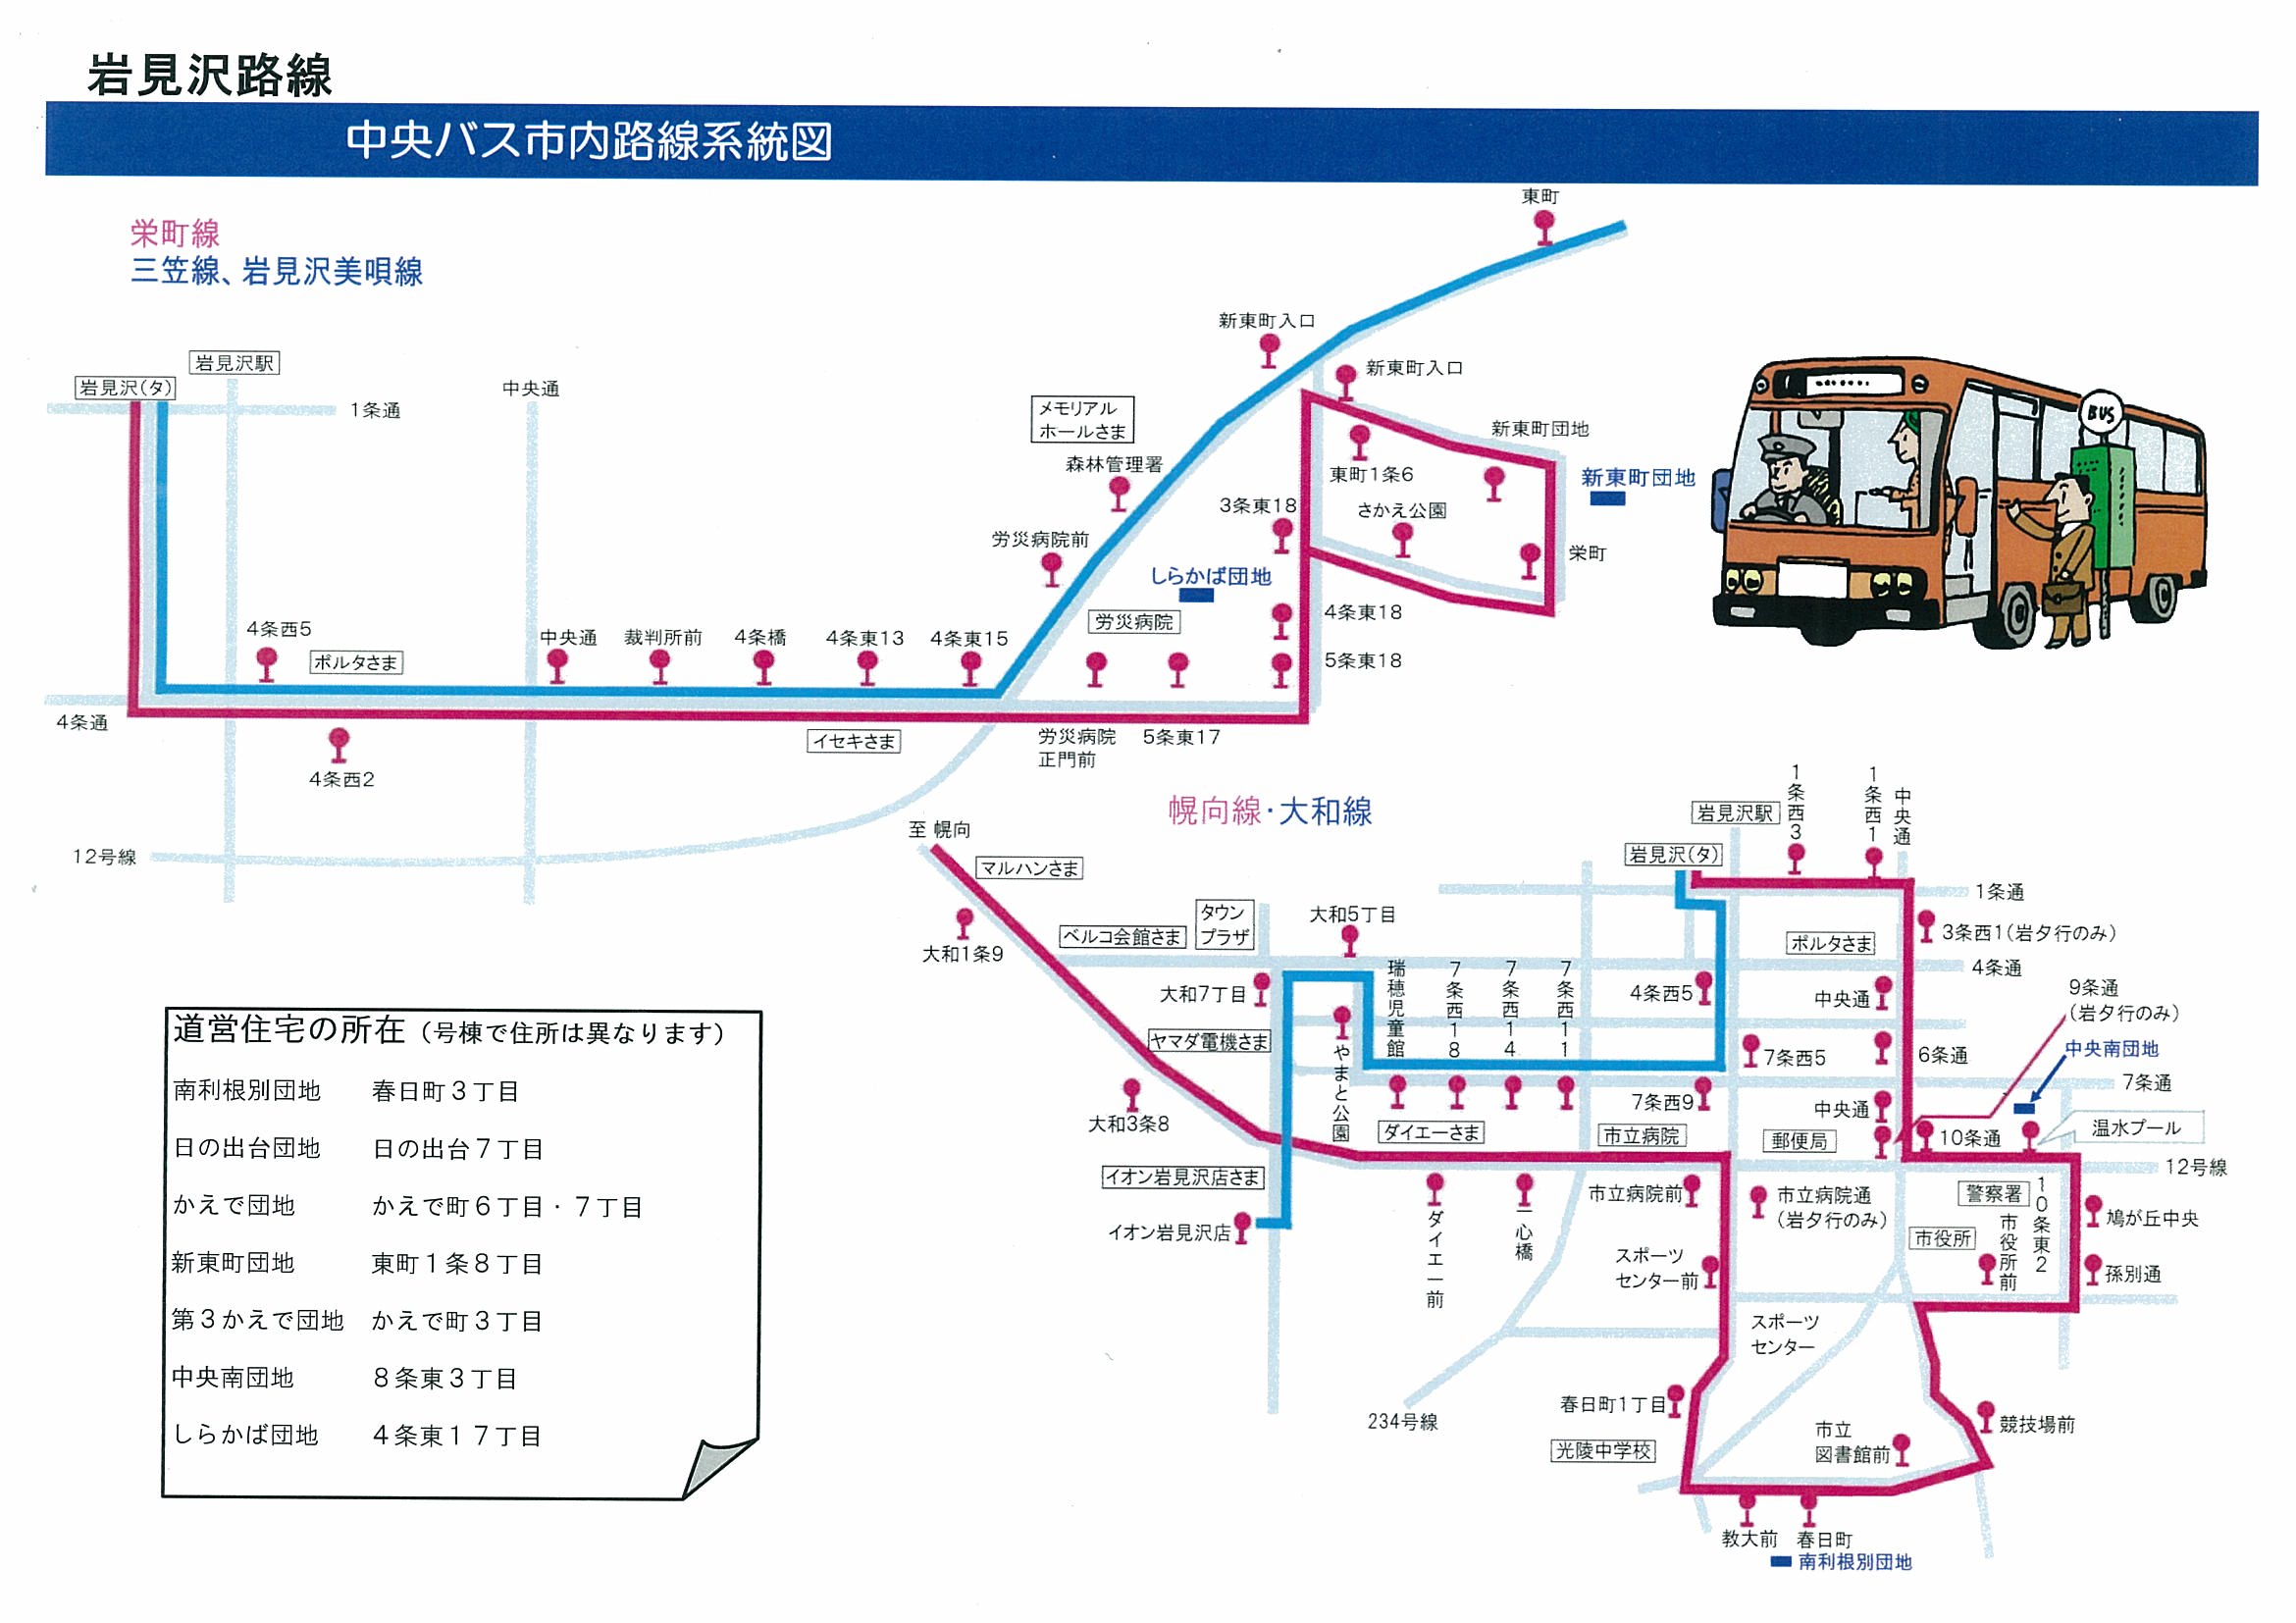 中央バス市内路線系統図